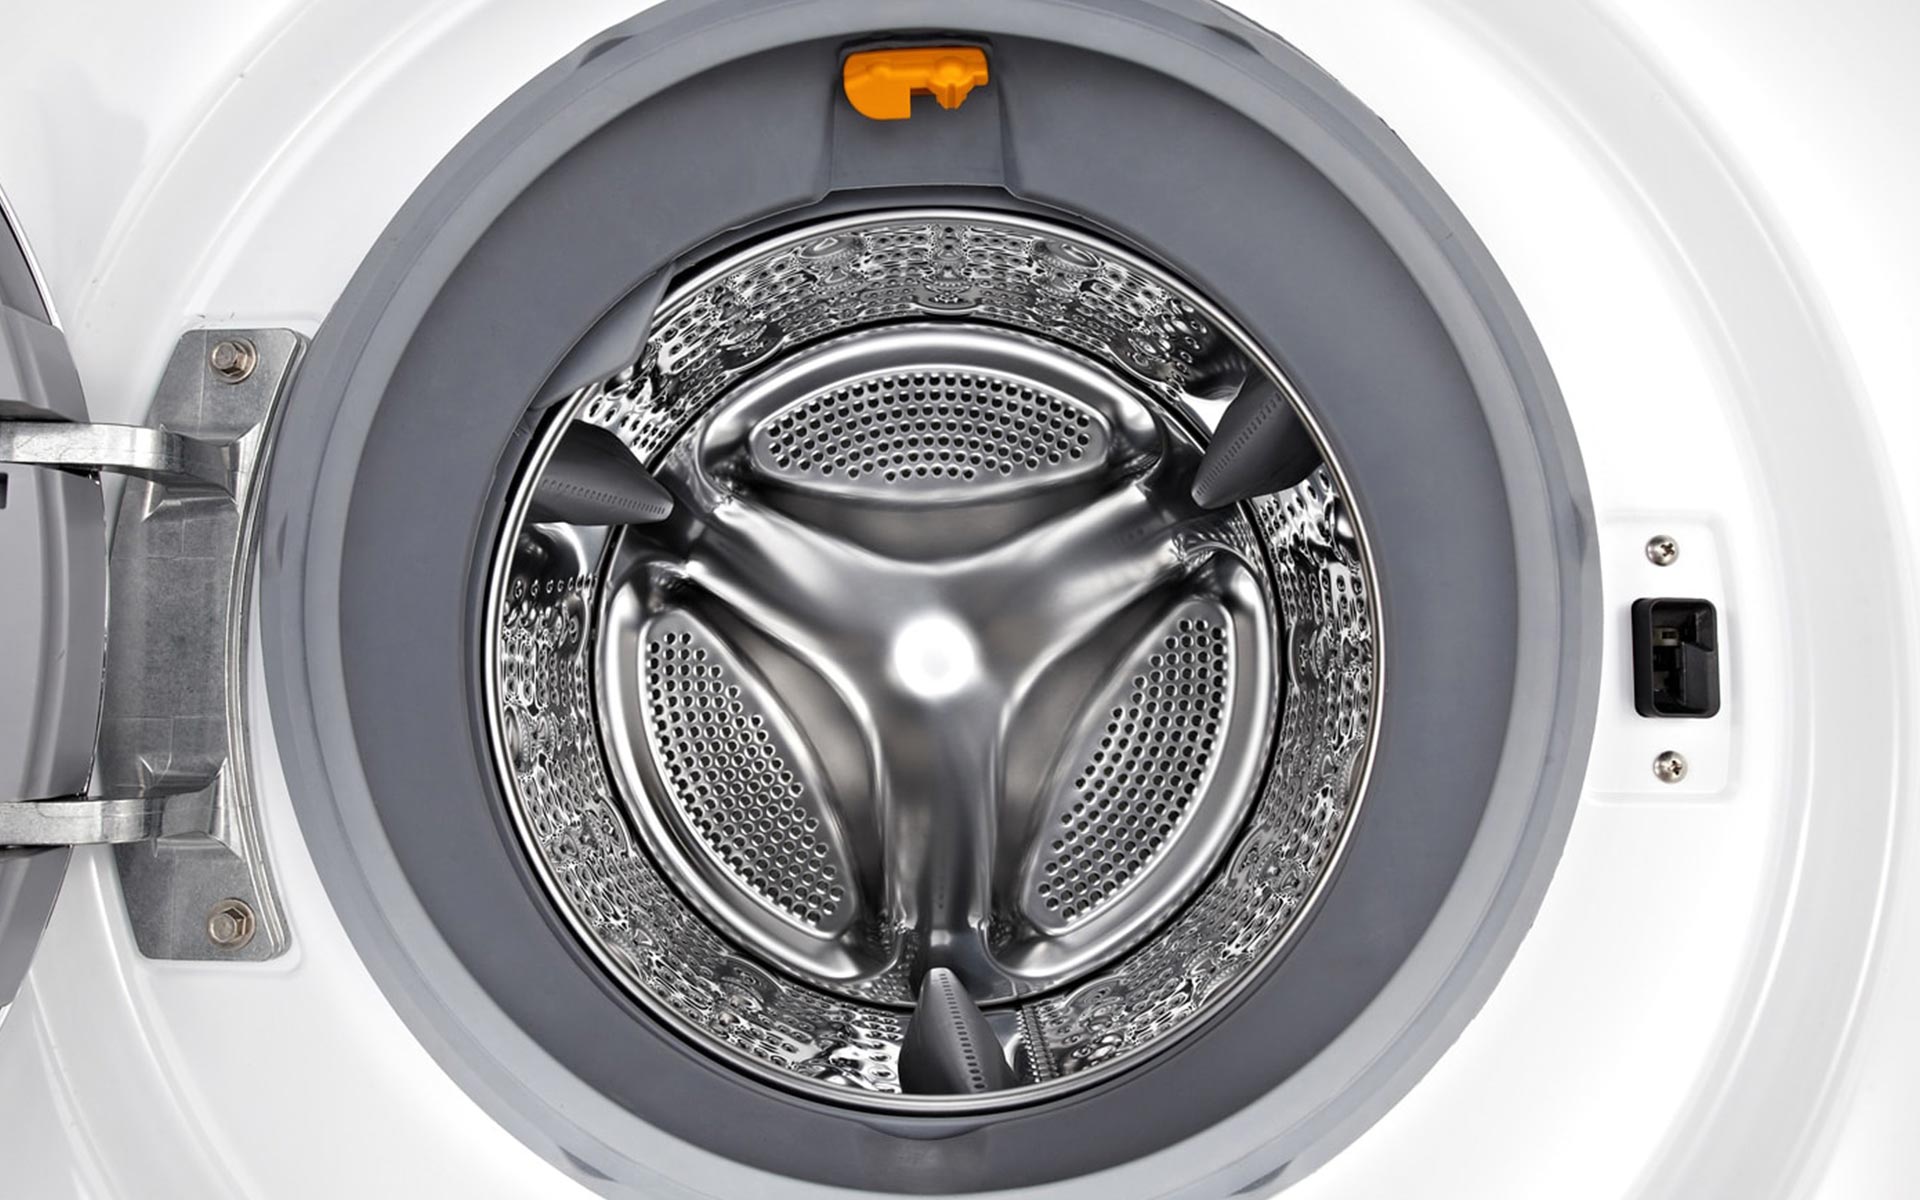 Interior seal on LG Washing Machine